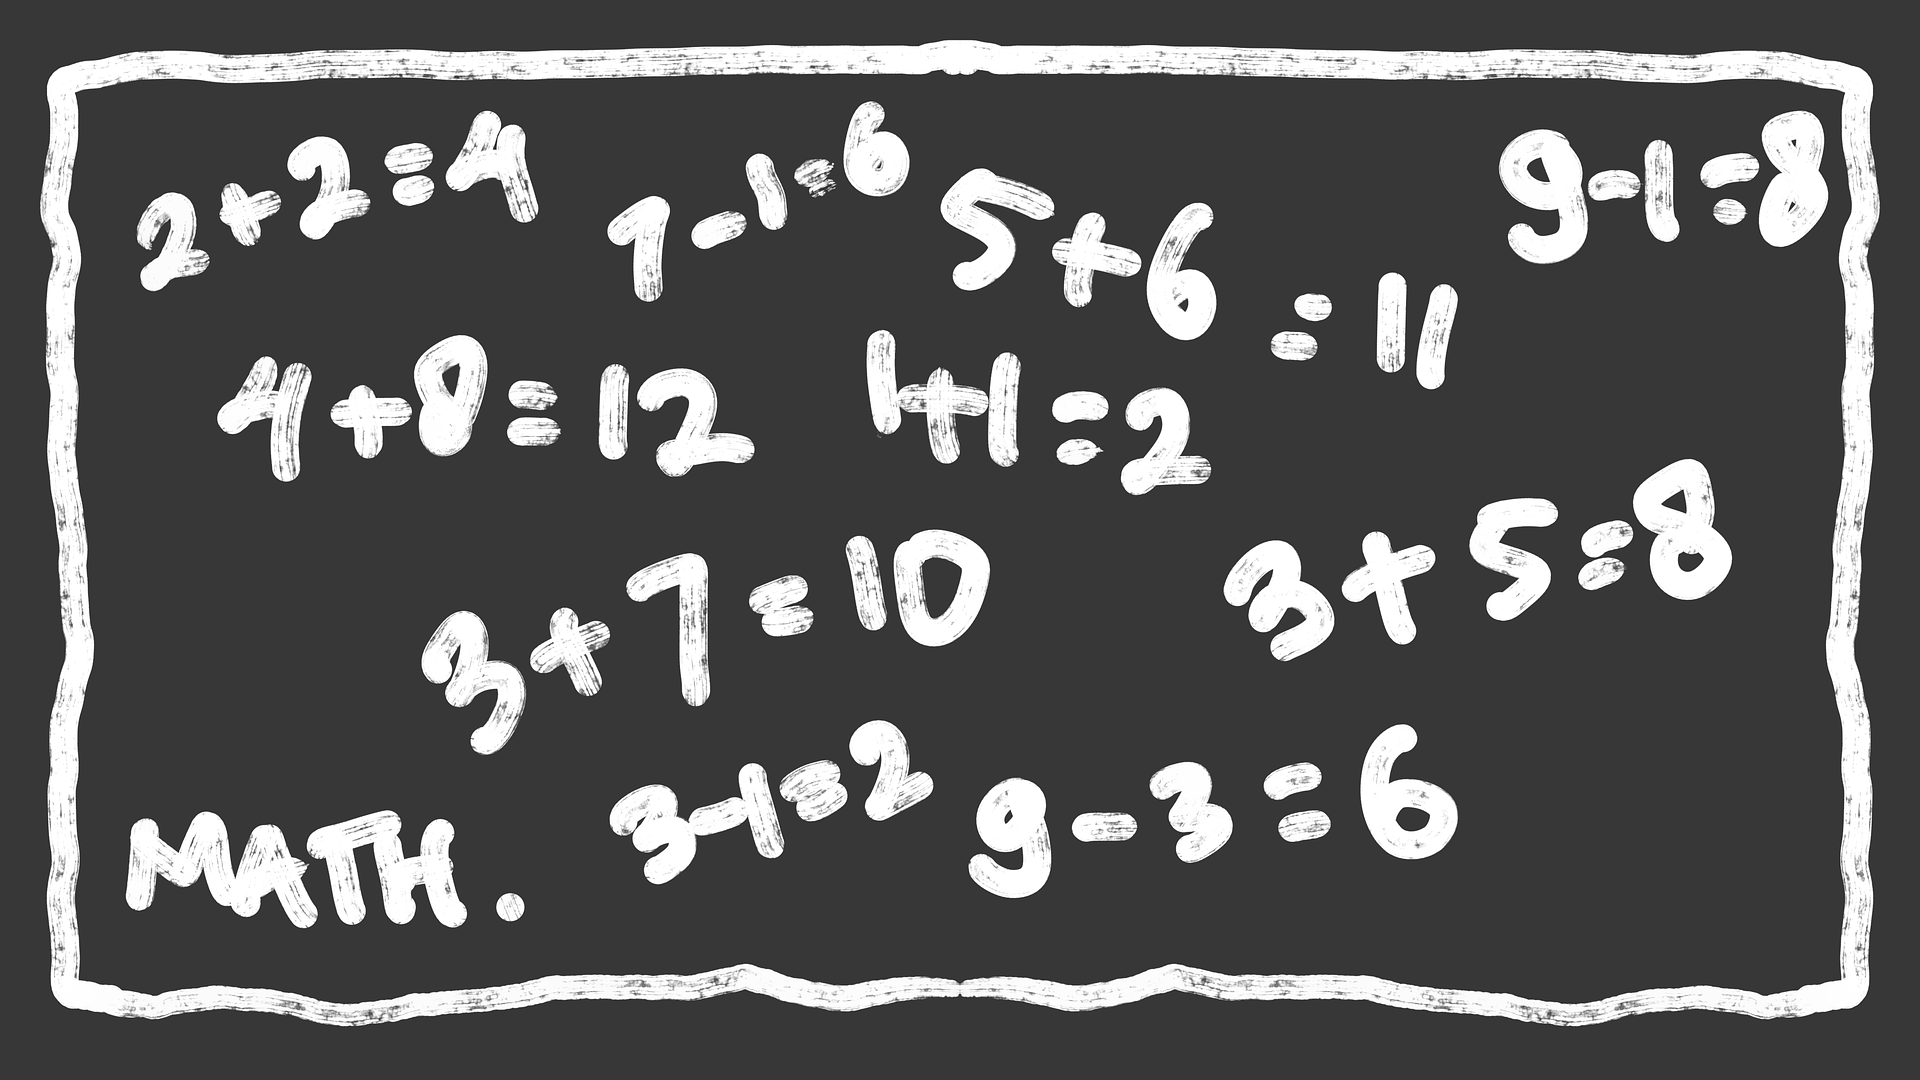 Blackboard with sums written on it.